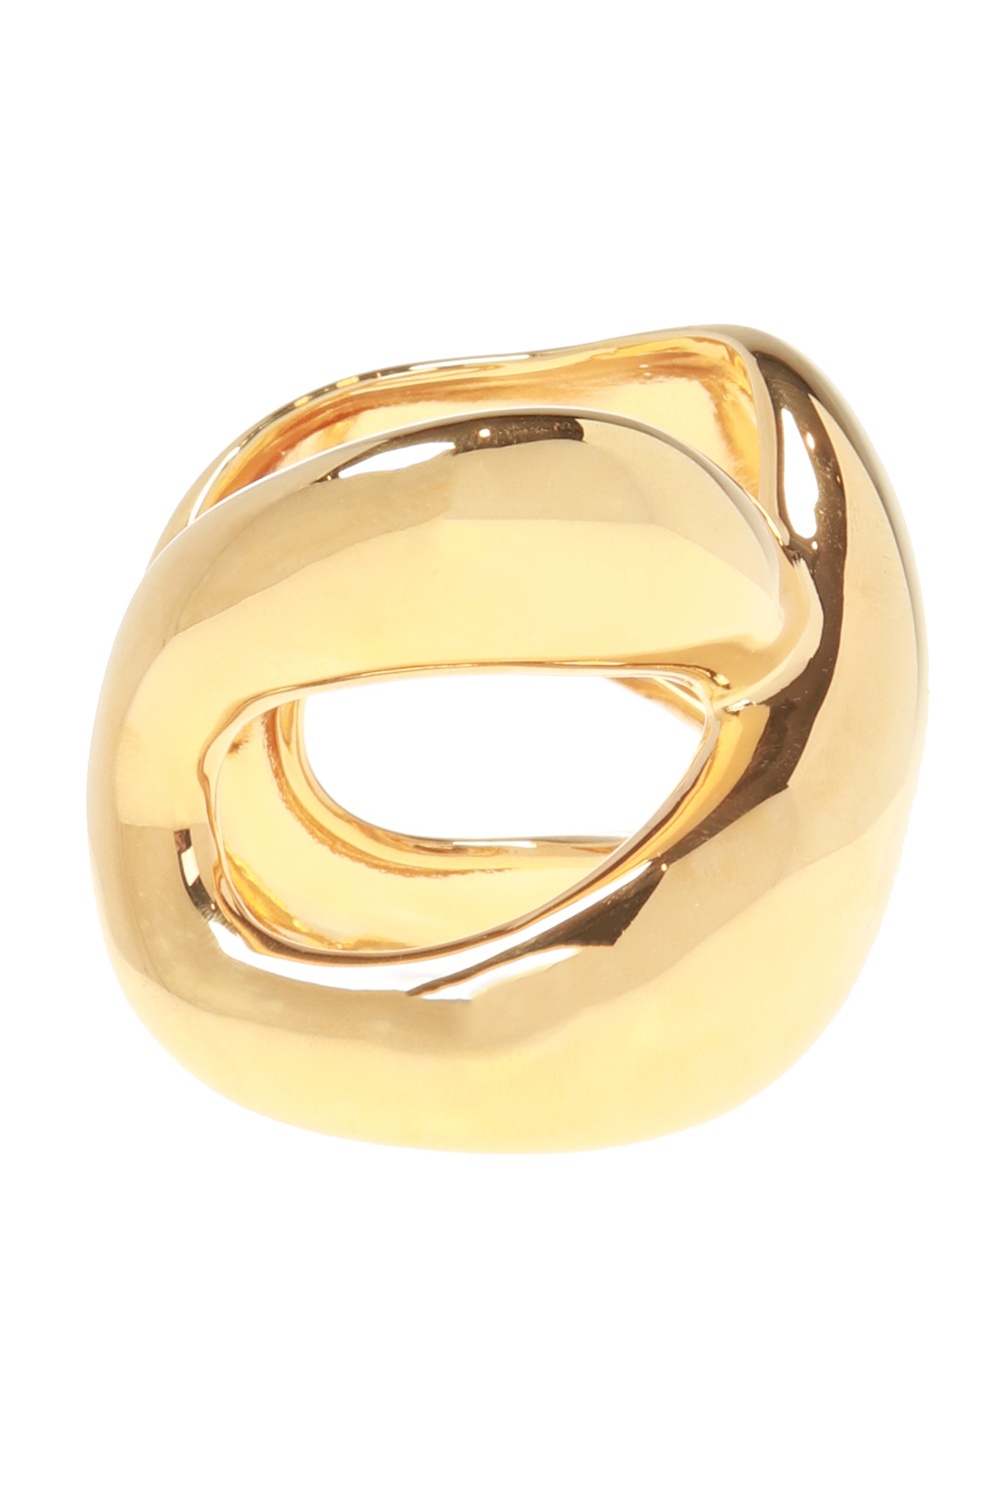 Chloé Gold plated bracelet